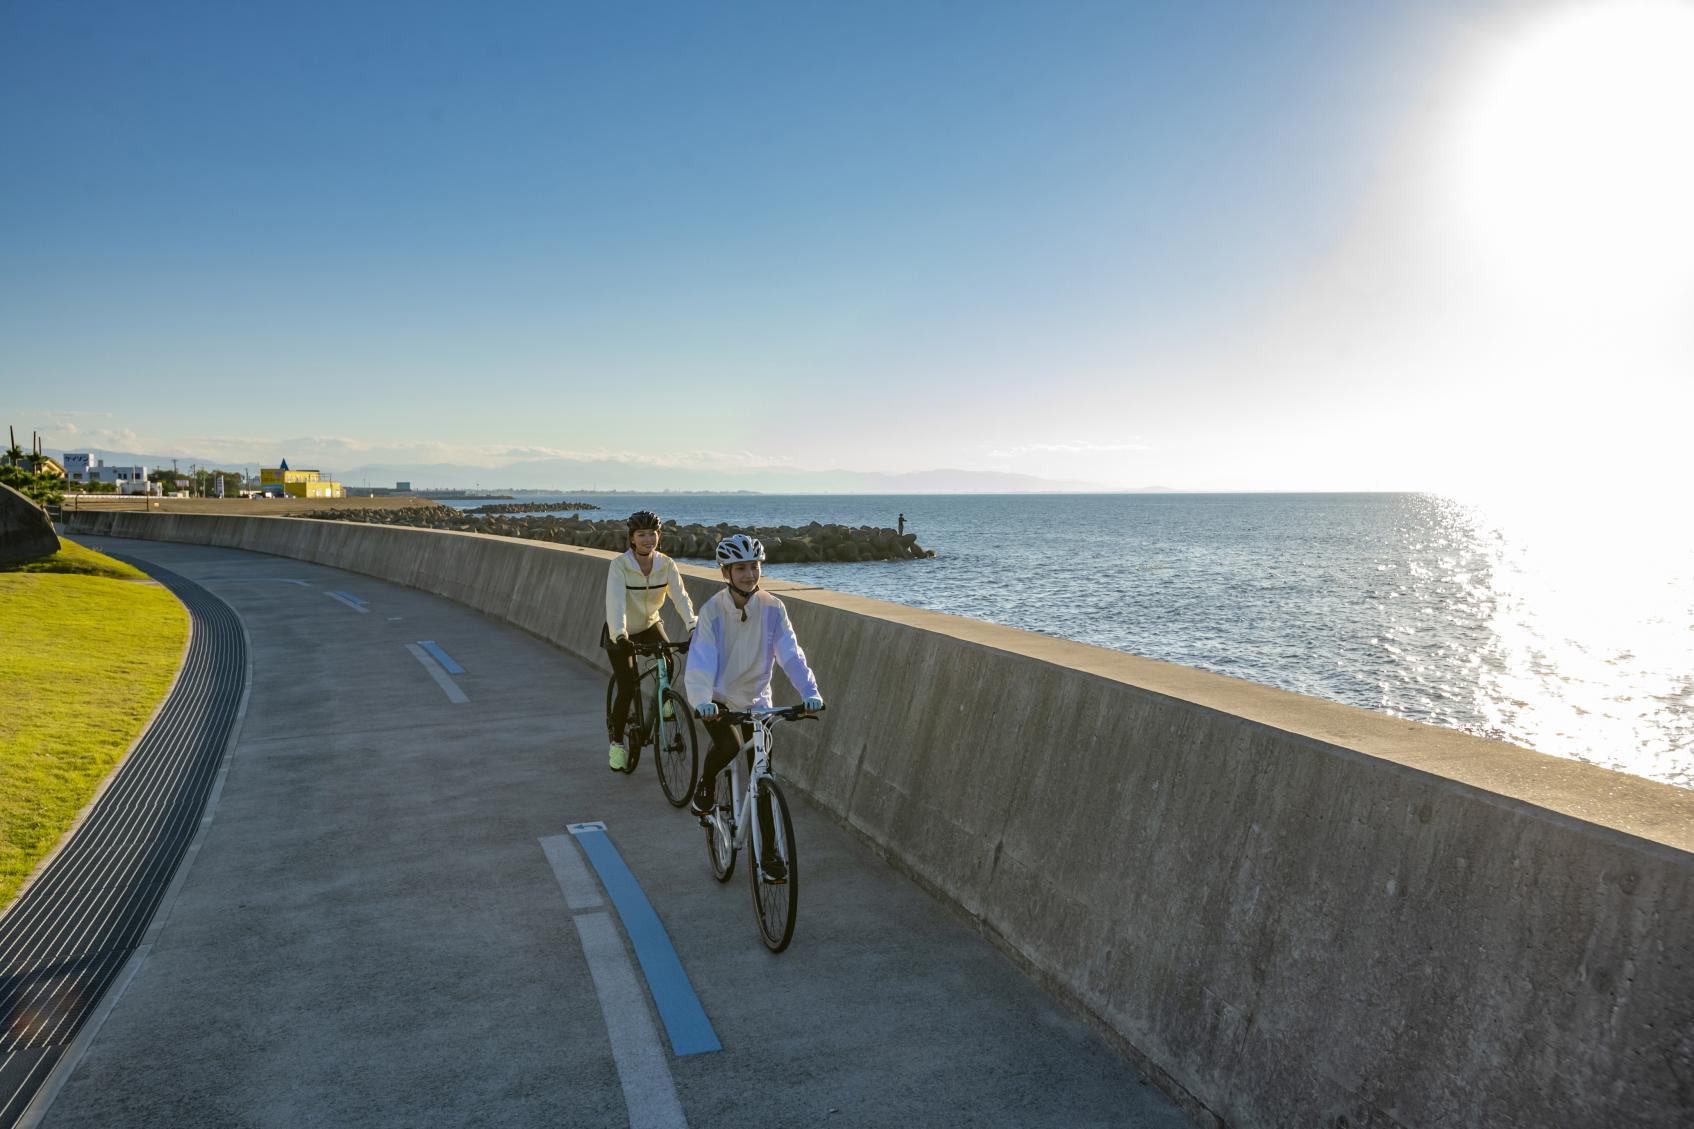 広大な富山湾から吹かれるさわやかな潮風を感じながら、サイクリングを楽しもう‼